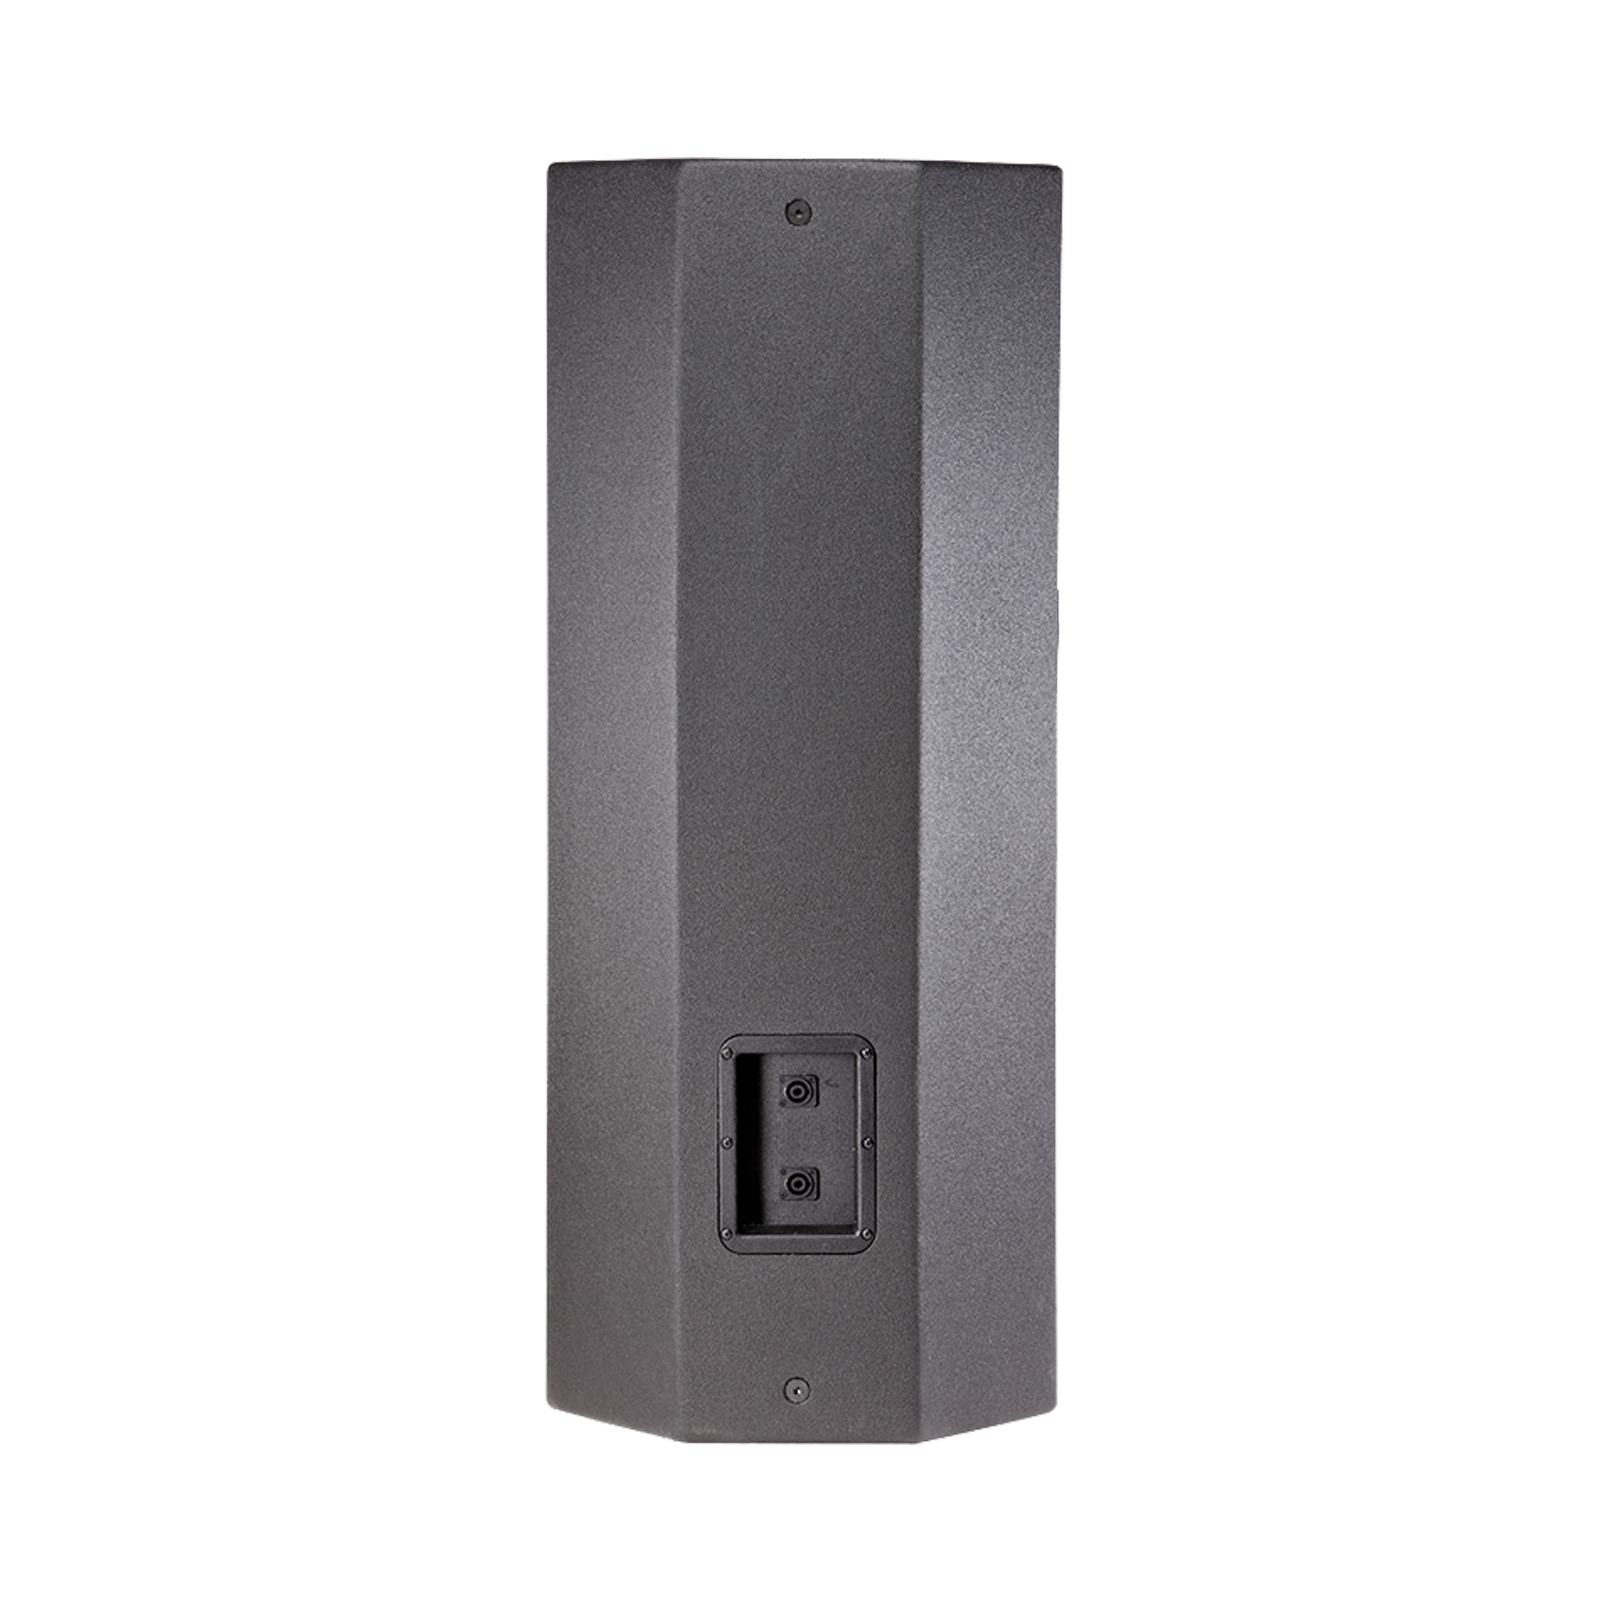 JBL PRX425 - Black - 15" Two-Way Loudspeaker System - Back